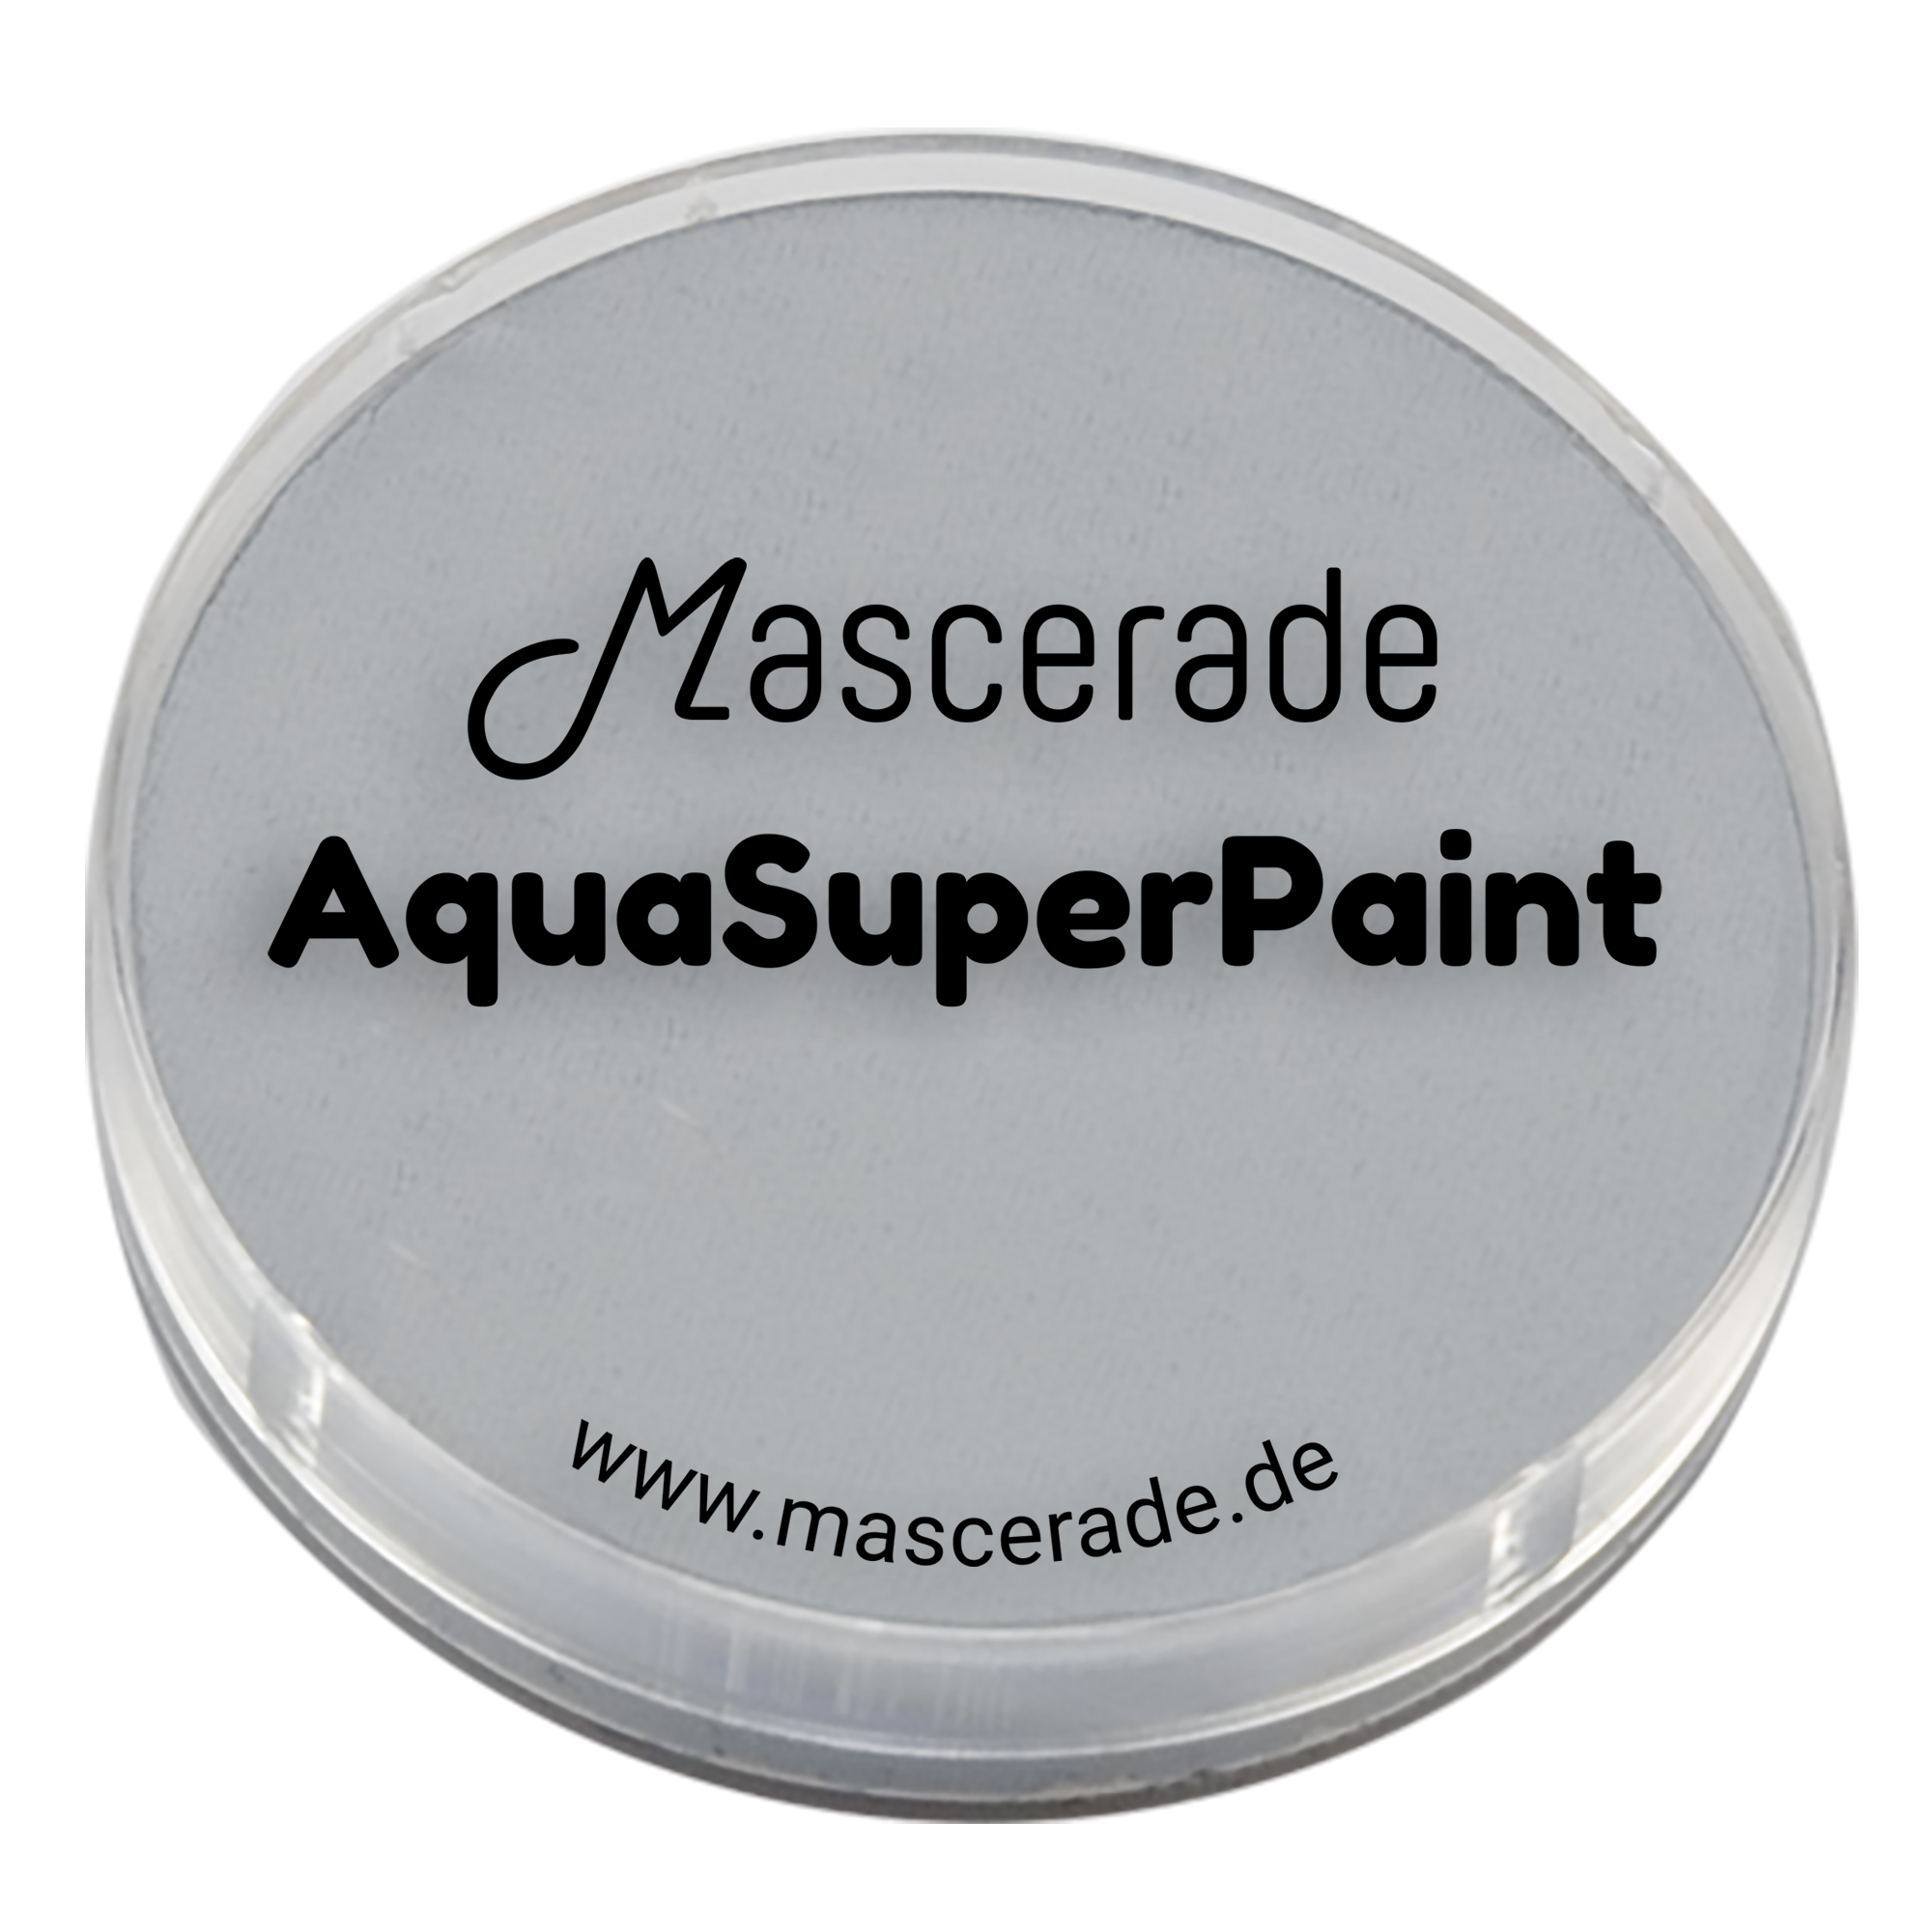 Mascerade AquaSuperPaint 30 ml Dose, Grau_light-grey